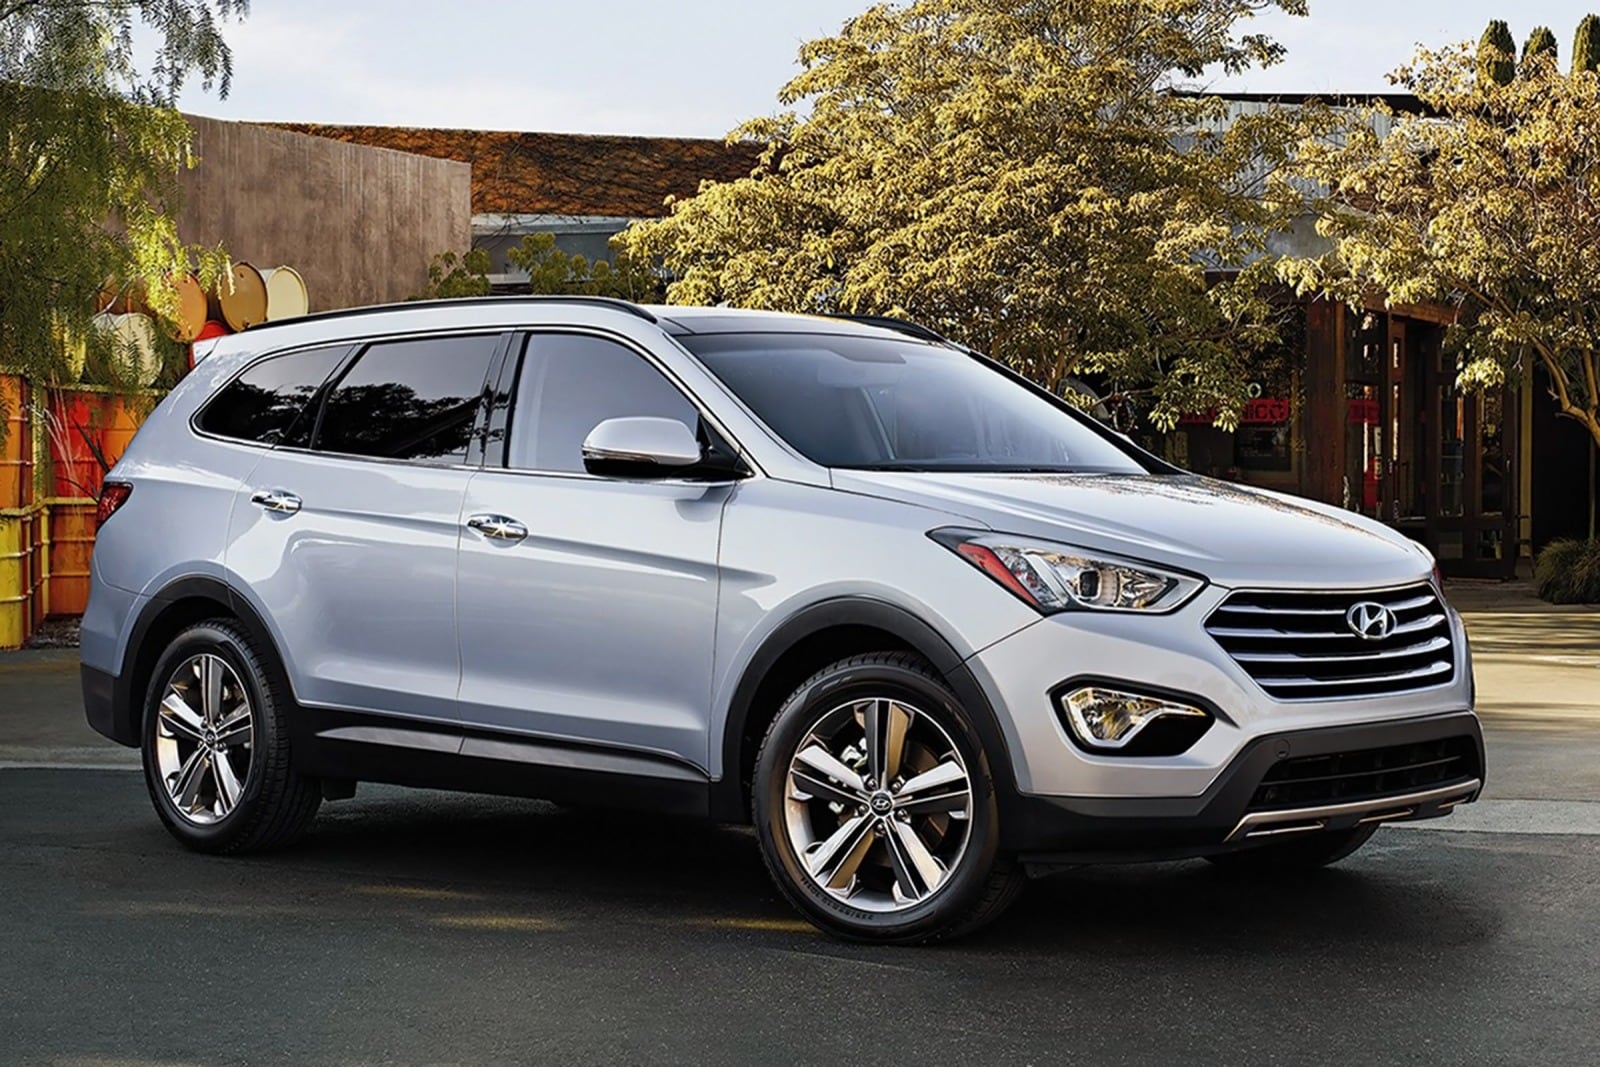 2016 Hyundai Santa Fe Review Ratings Edmunds